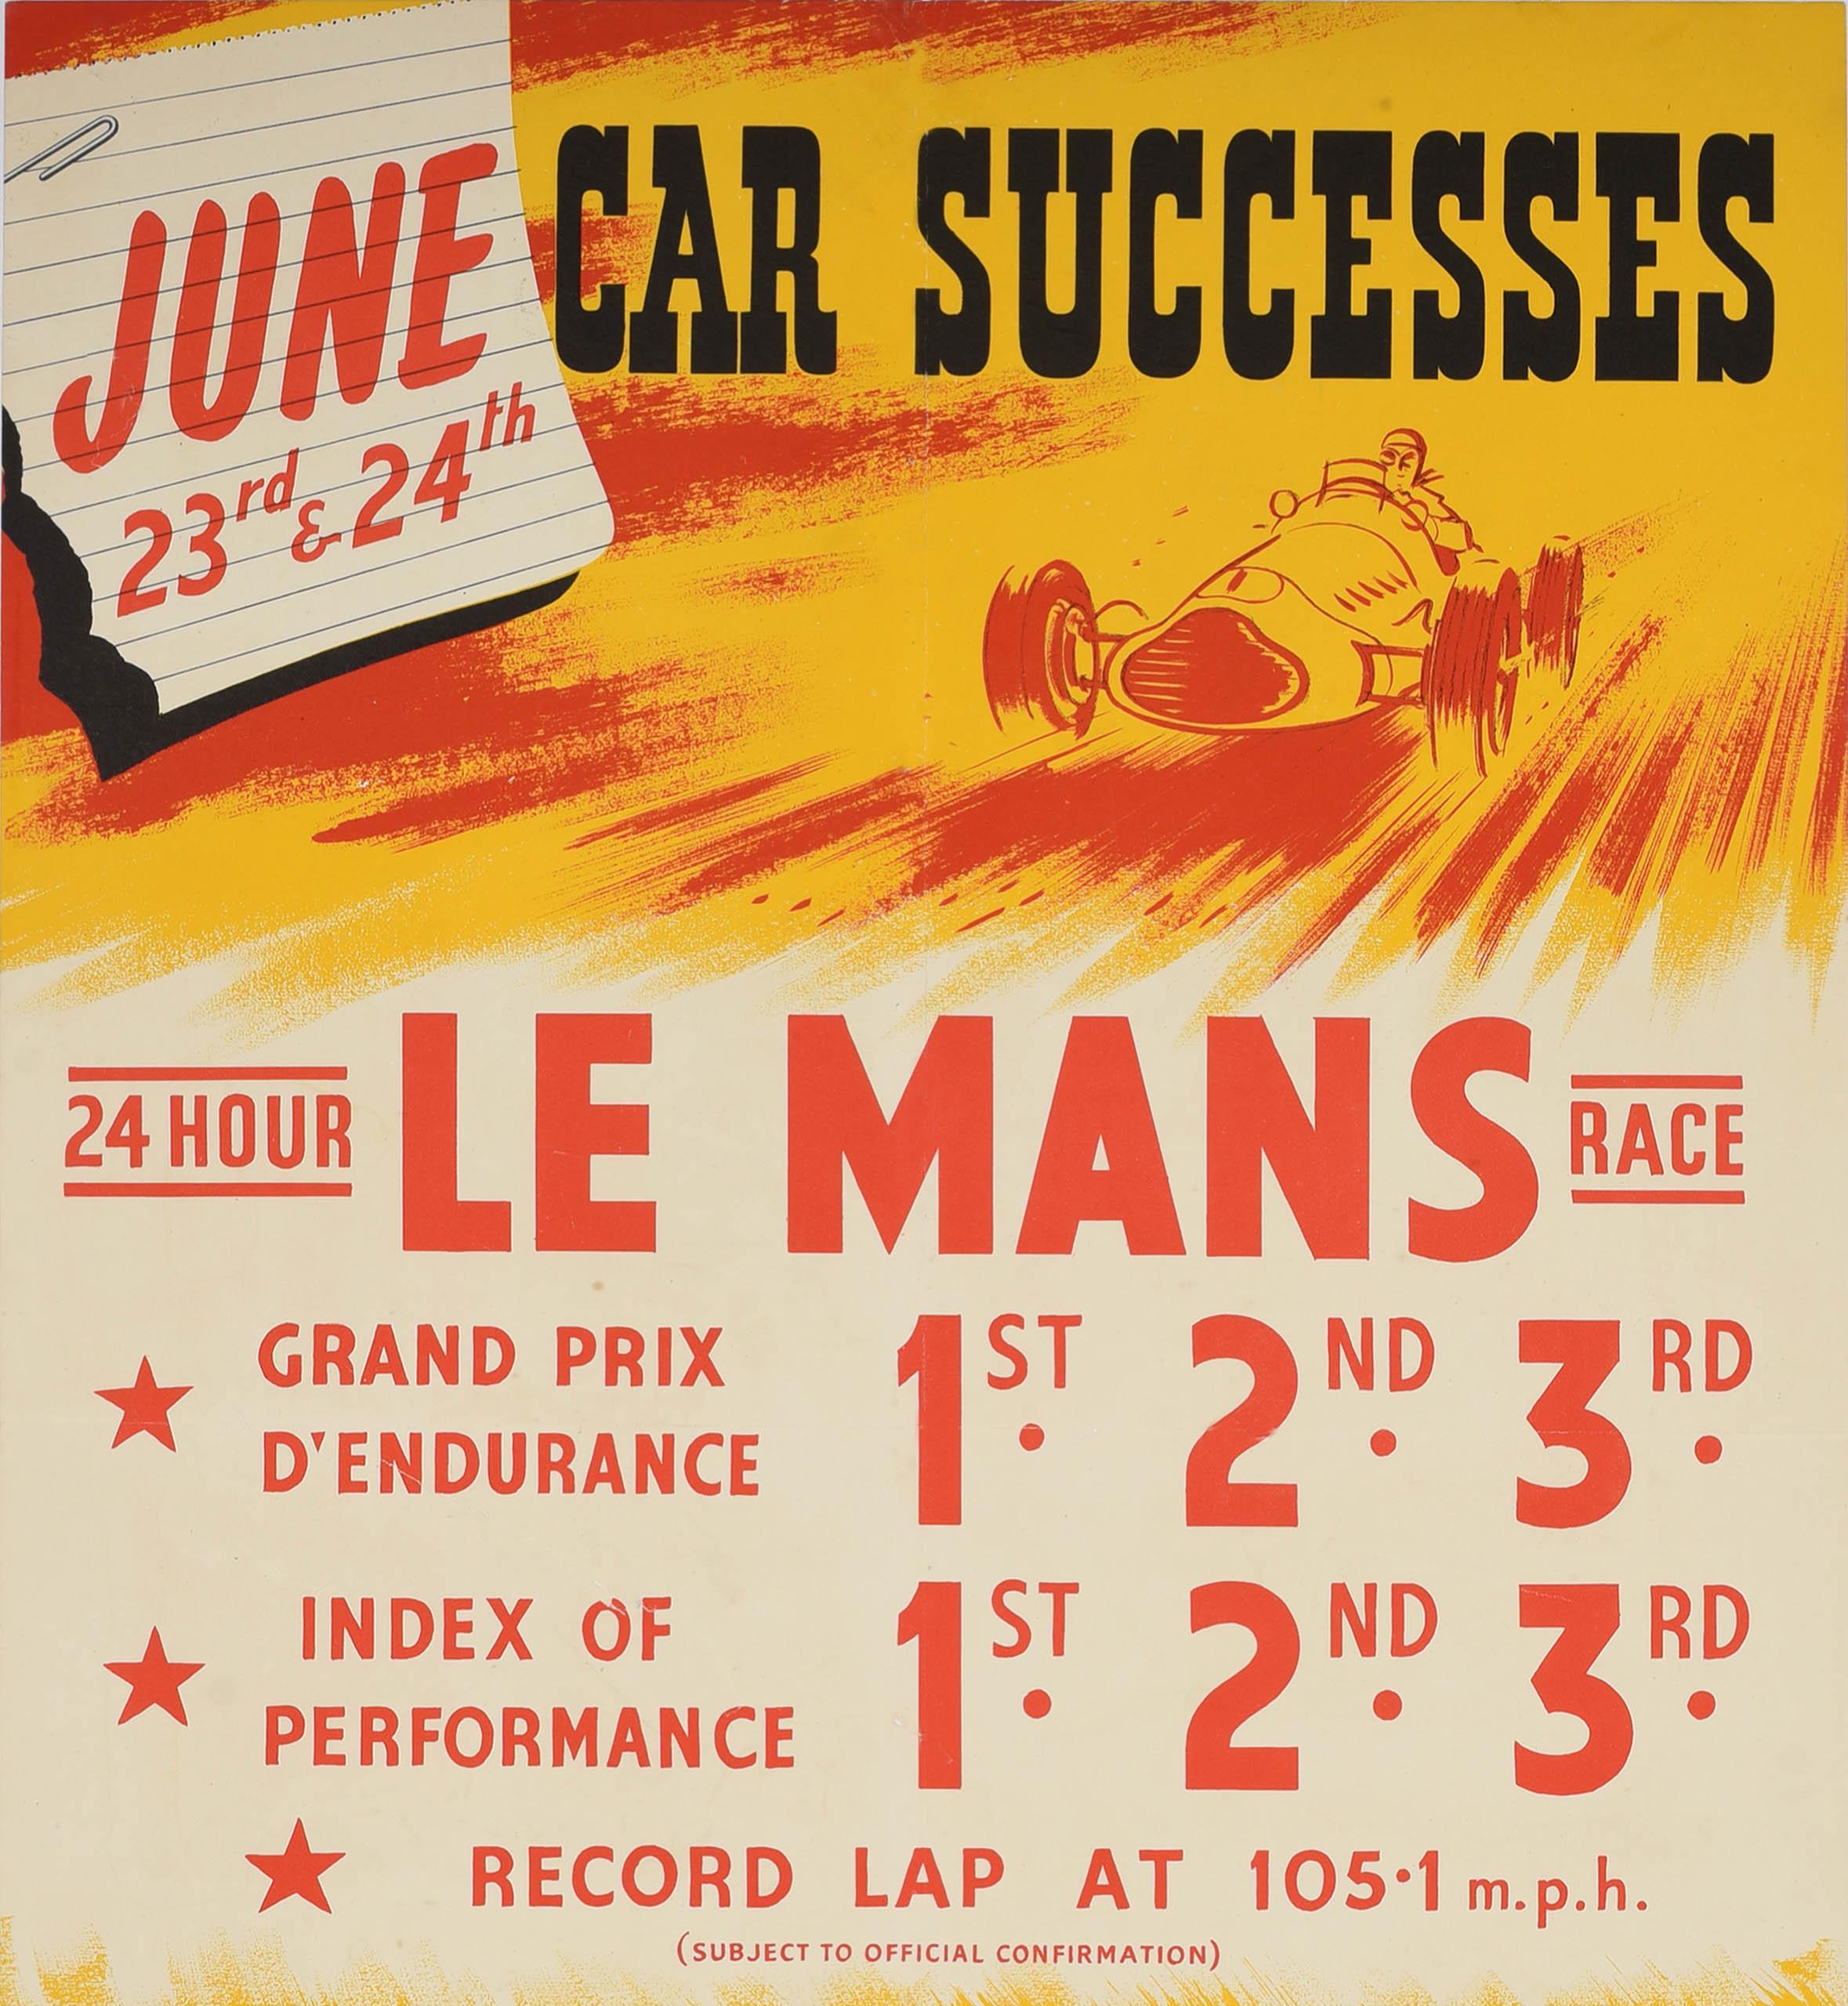 Original Vintage-Motorsport-Sponsoring-Poster zur Feier der Auto-Erfolge 24-Stunden-Rennen von Le Mans 1. Dunlop mit einer dynamischen roten und gelben Illustration eines klassischen Rennwagens, der auf den Betrachter zurast, wobei der Sieg in den